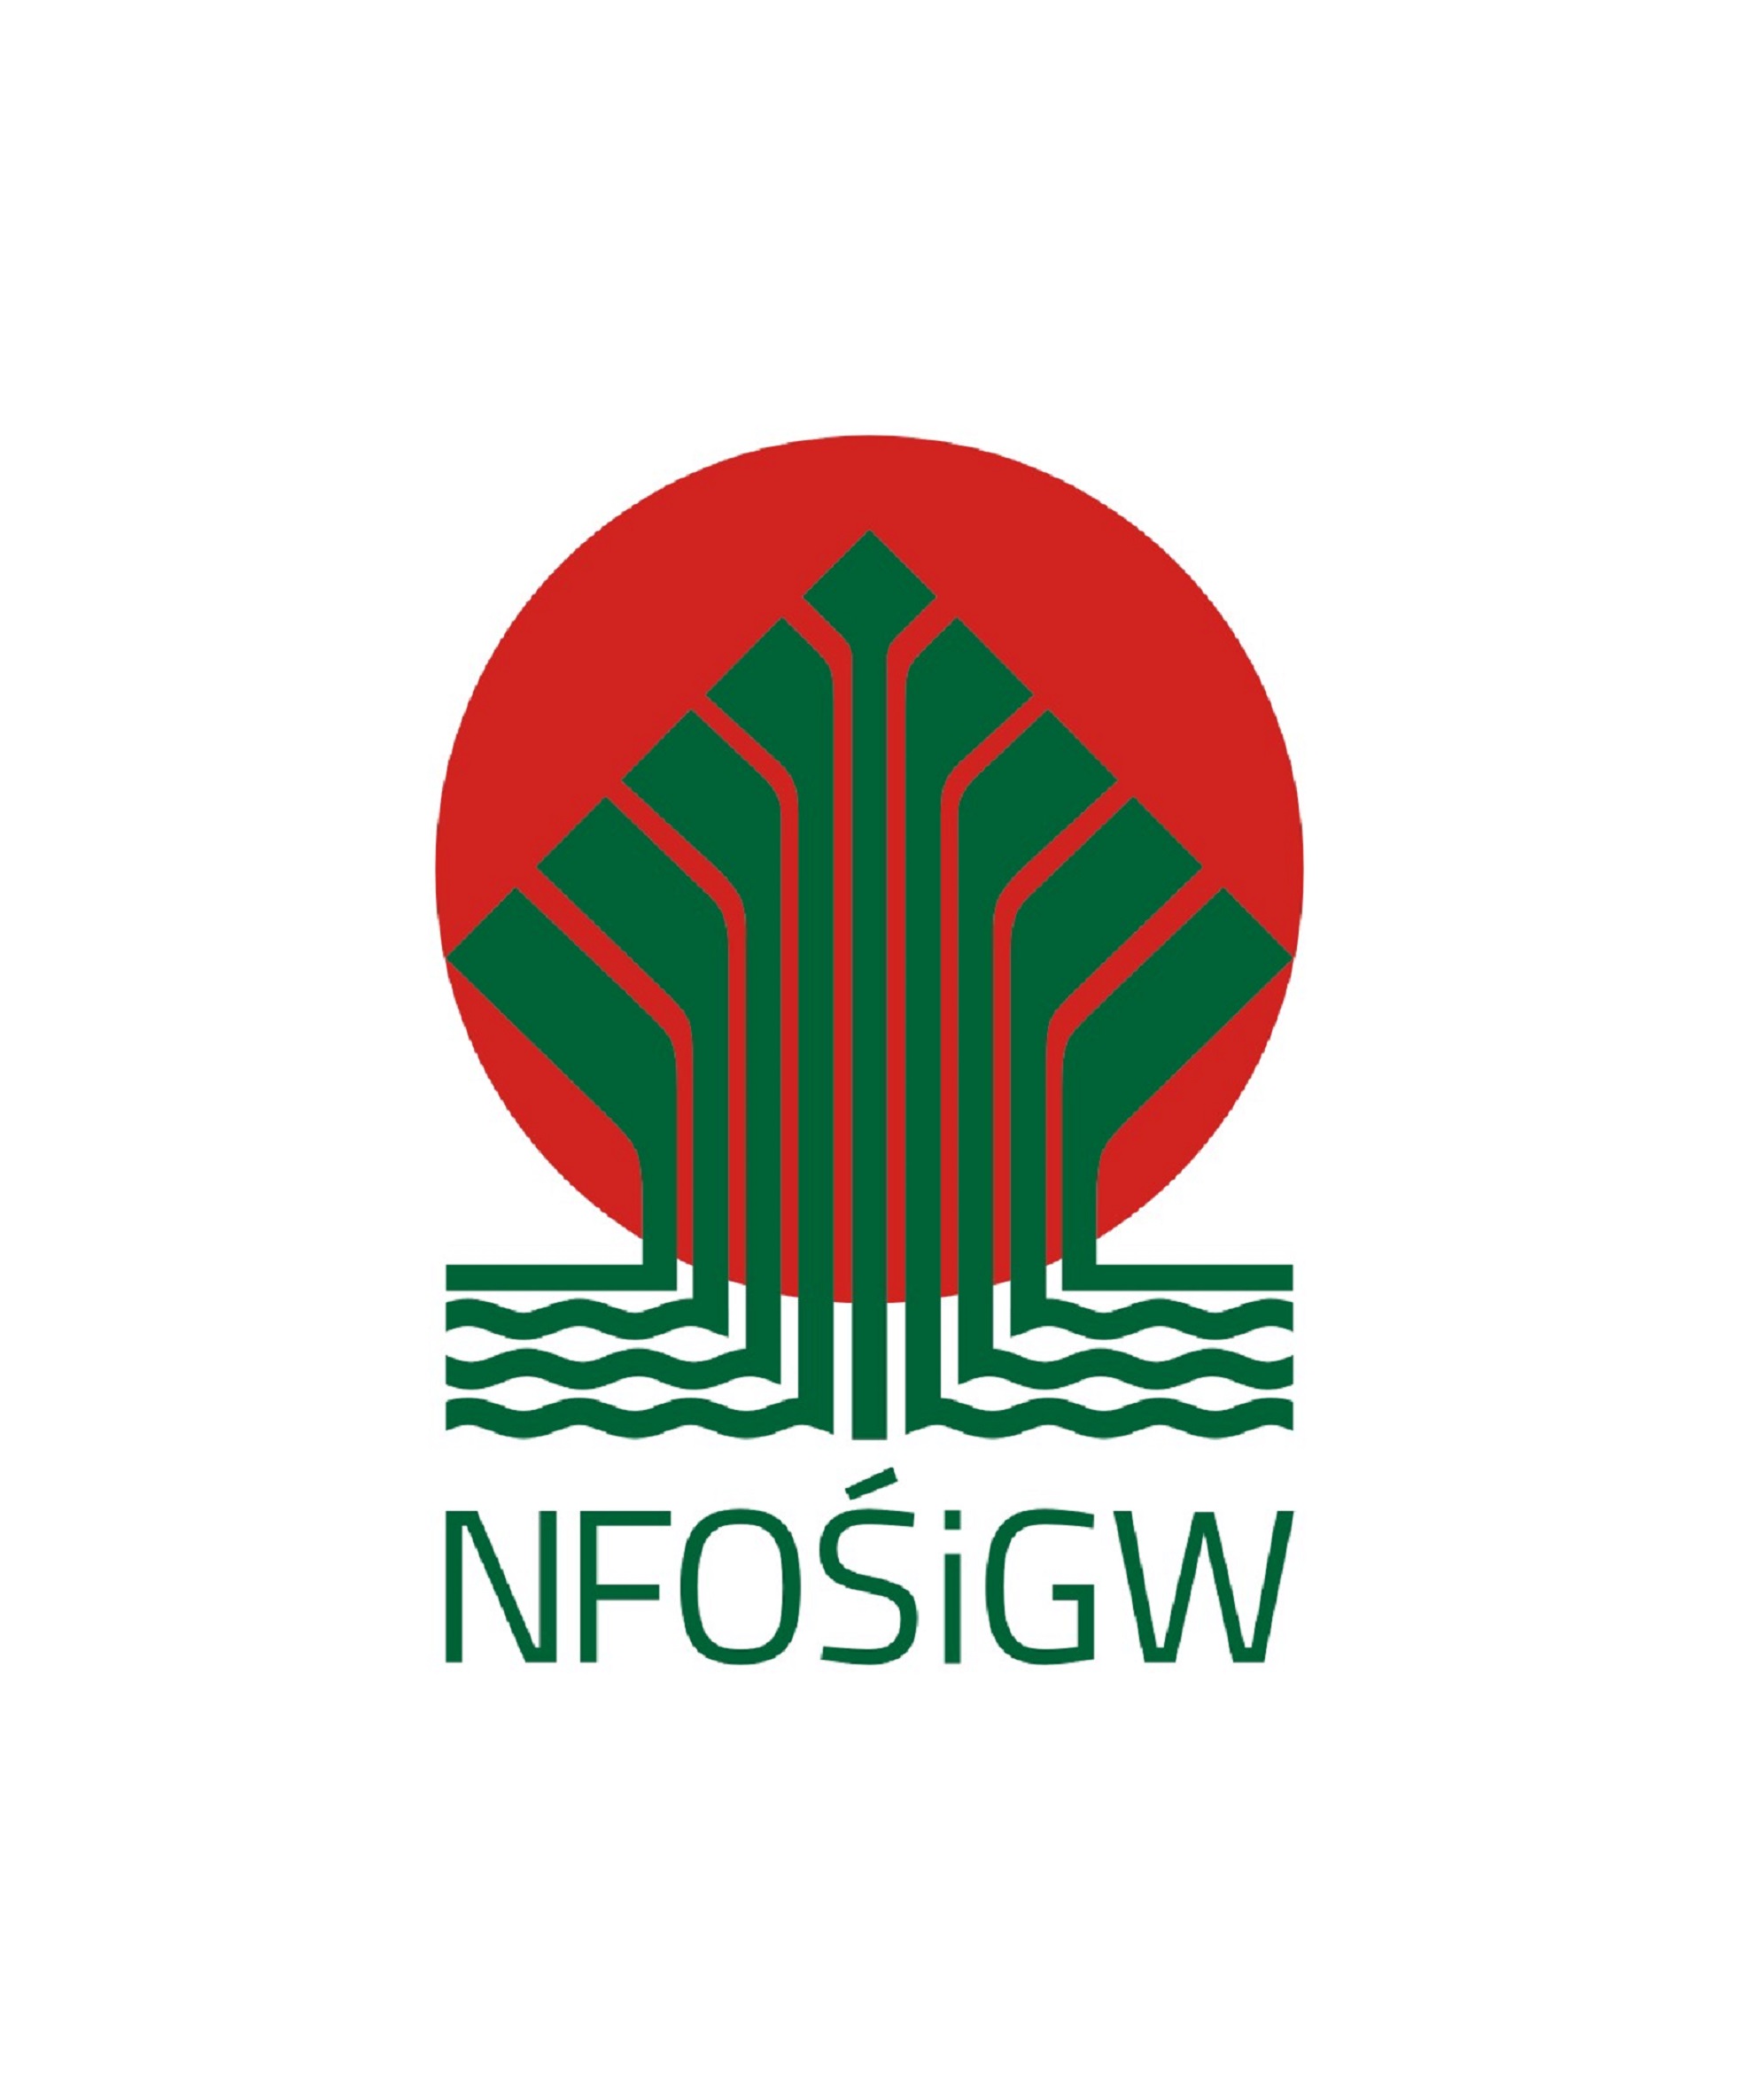 Logo projektu ekologicznego